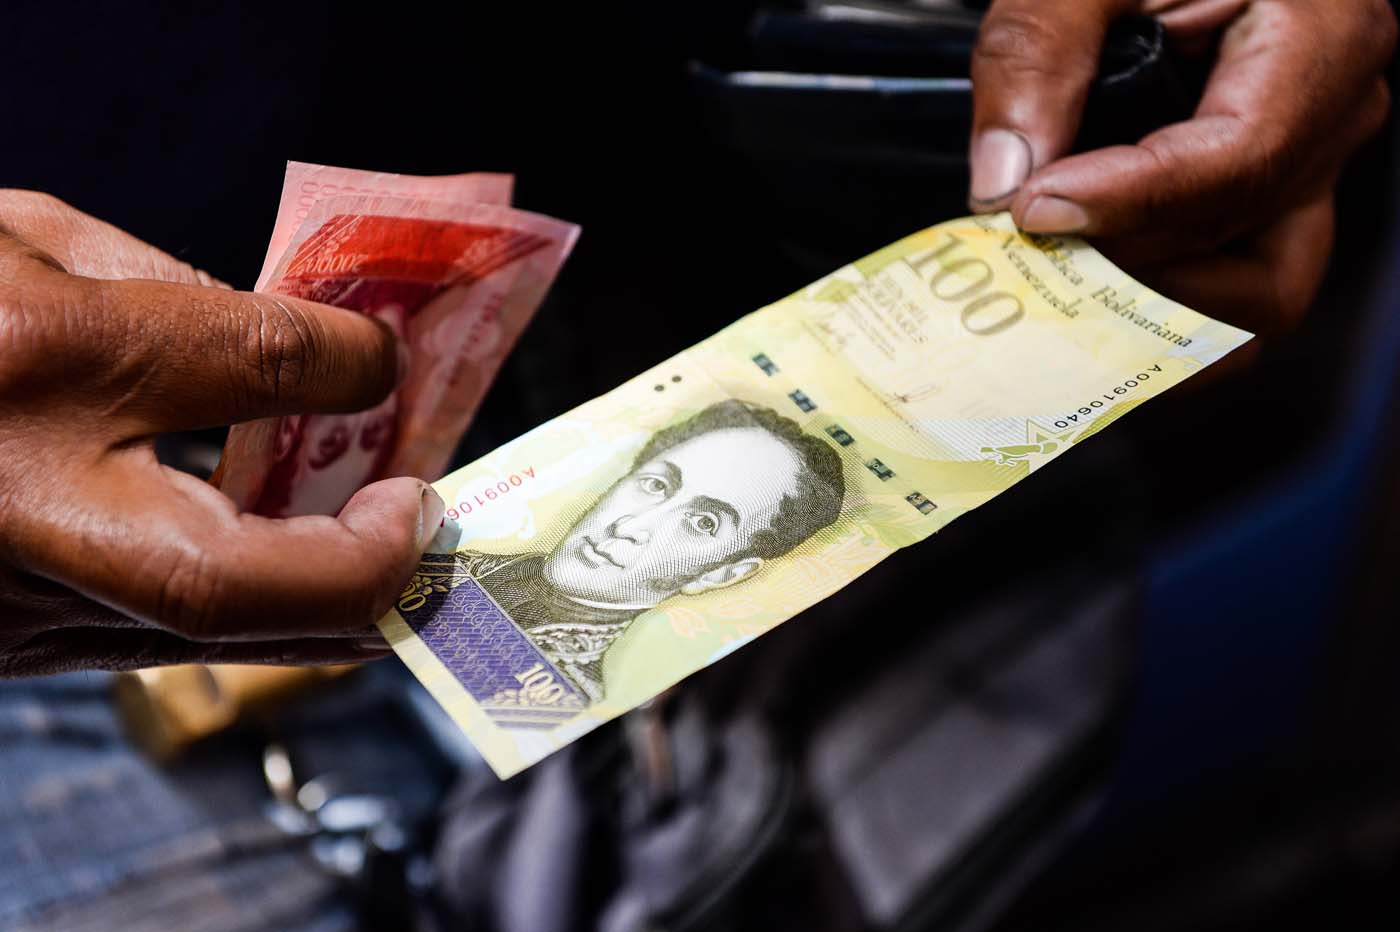 Nuevo billete de 100 mil bolívares circula a partir de este miércoles